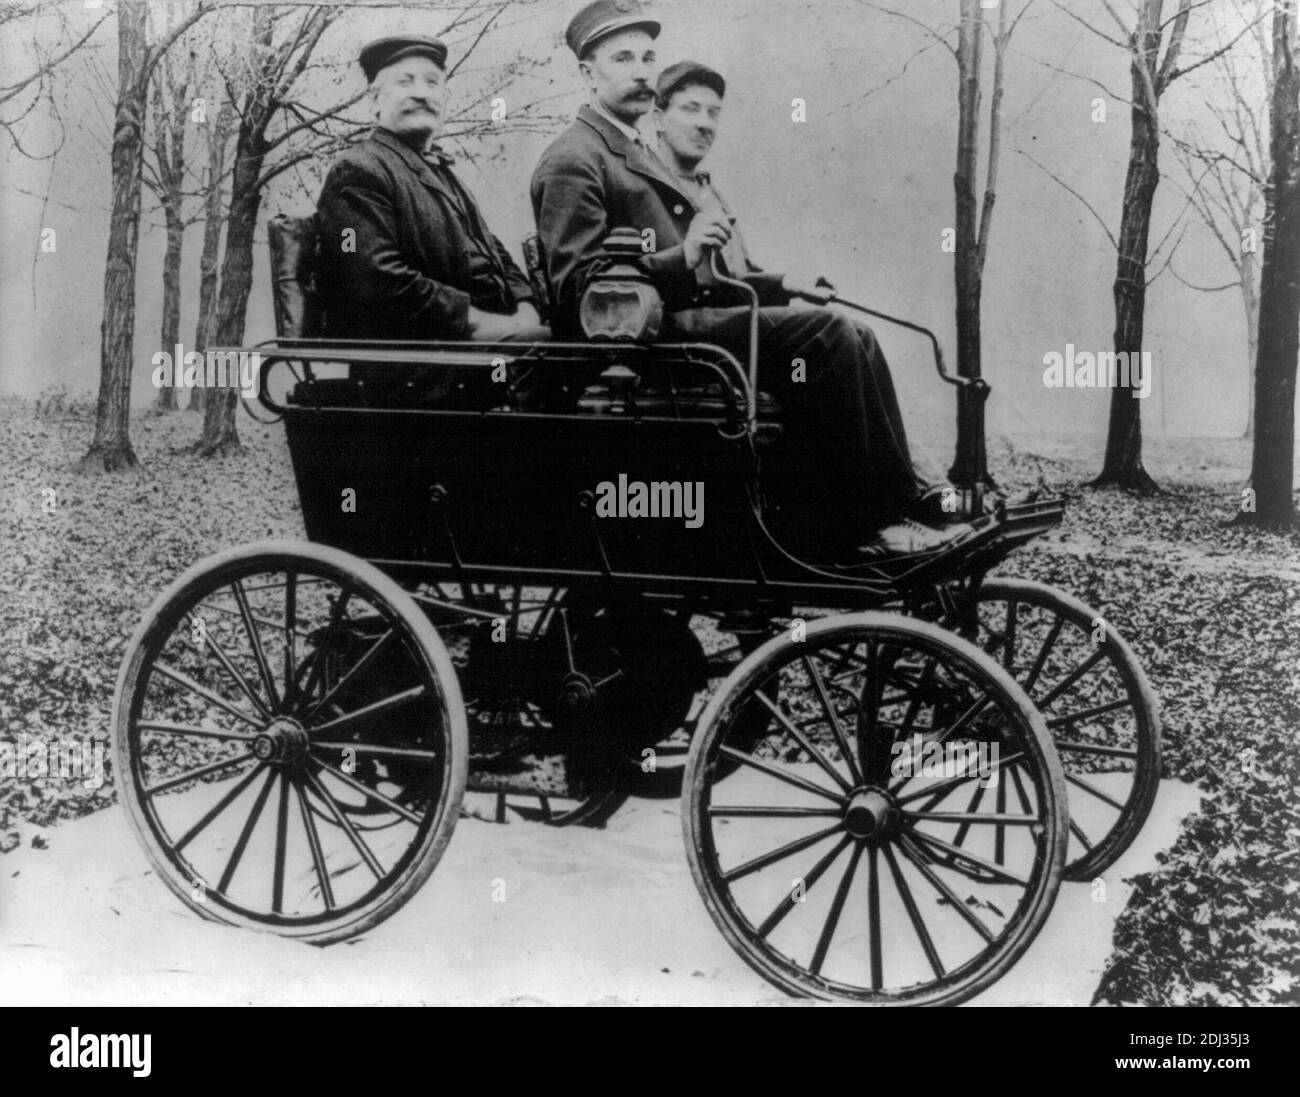 Das erste Oldsmobile - Foto zeigt drei Männer, die in einem Auto in einem waldähnlichen Bereich sitzen; Automobil sitzt auf Stoff auf einem mit Blättern bedeckten Boden, 1897 Stockfoto